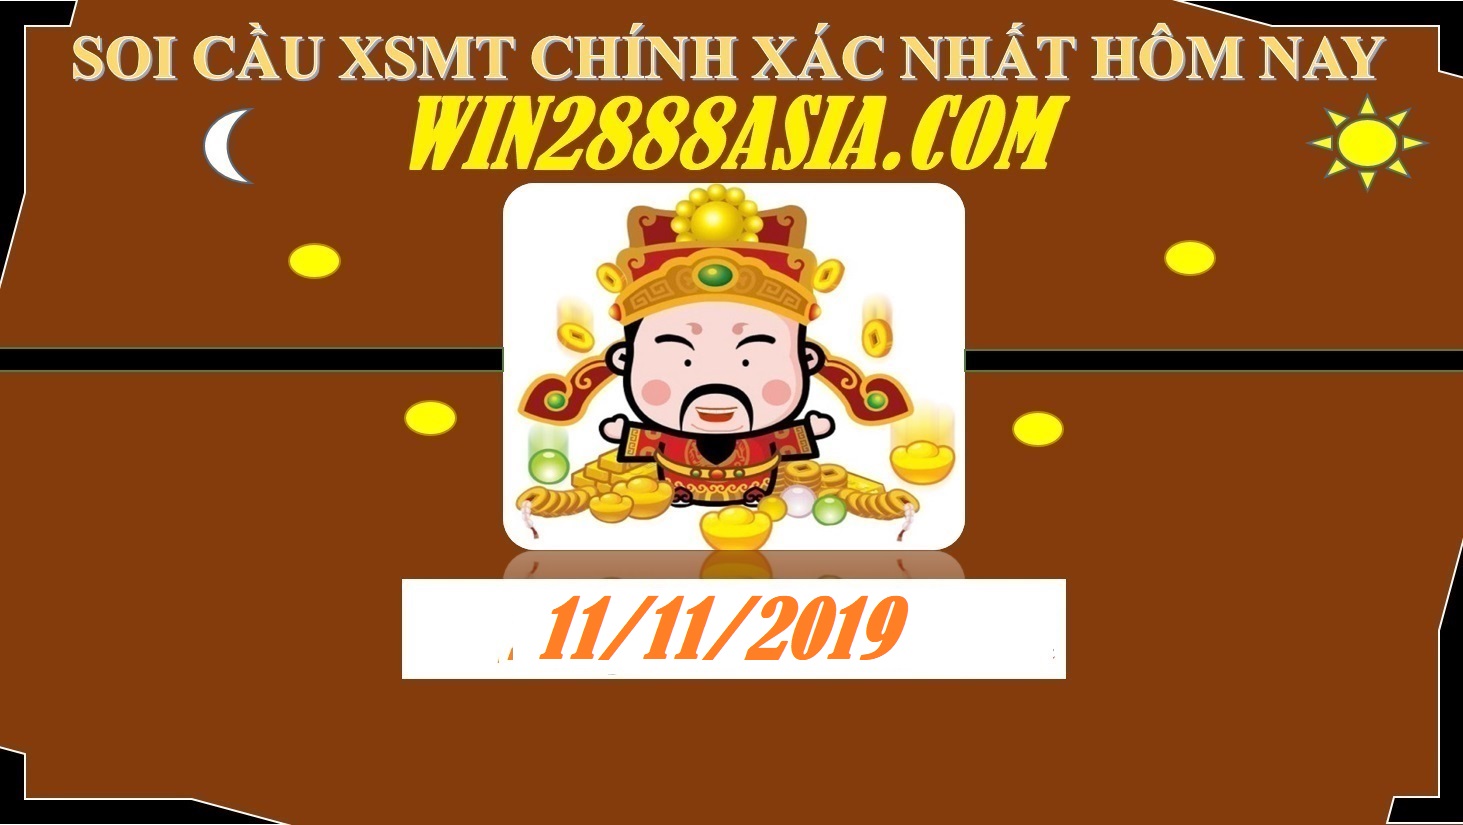 Soi cầu XSMT 11-11-2019 Win2888